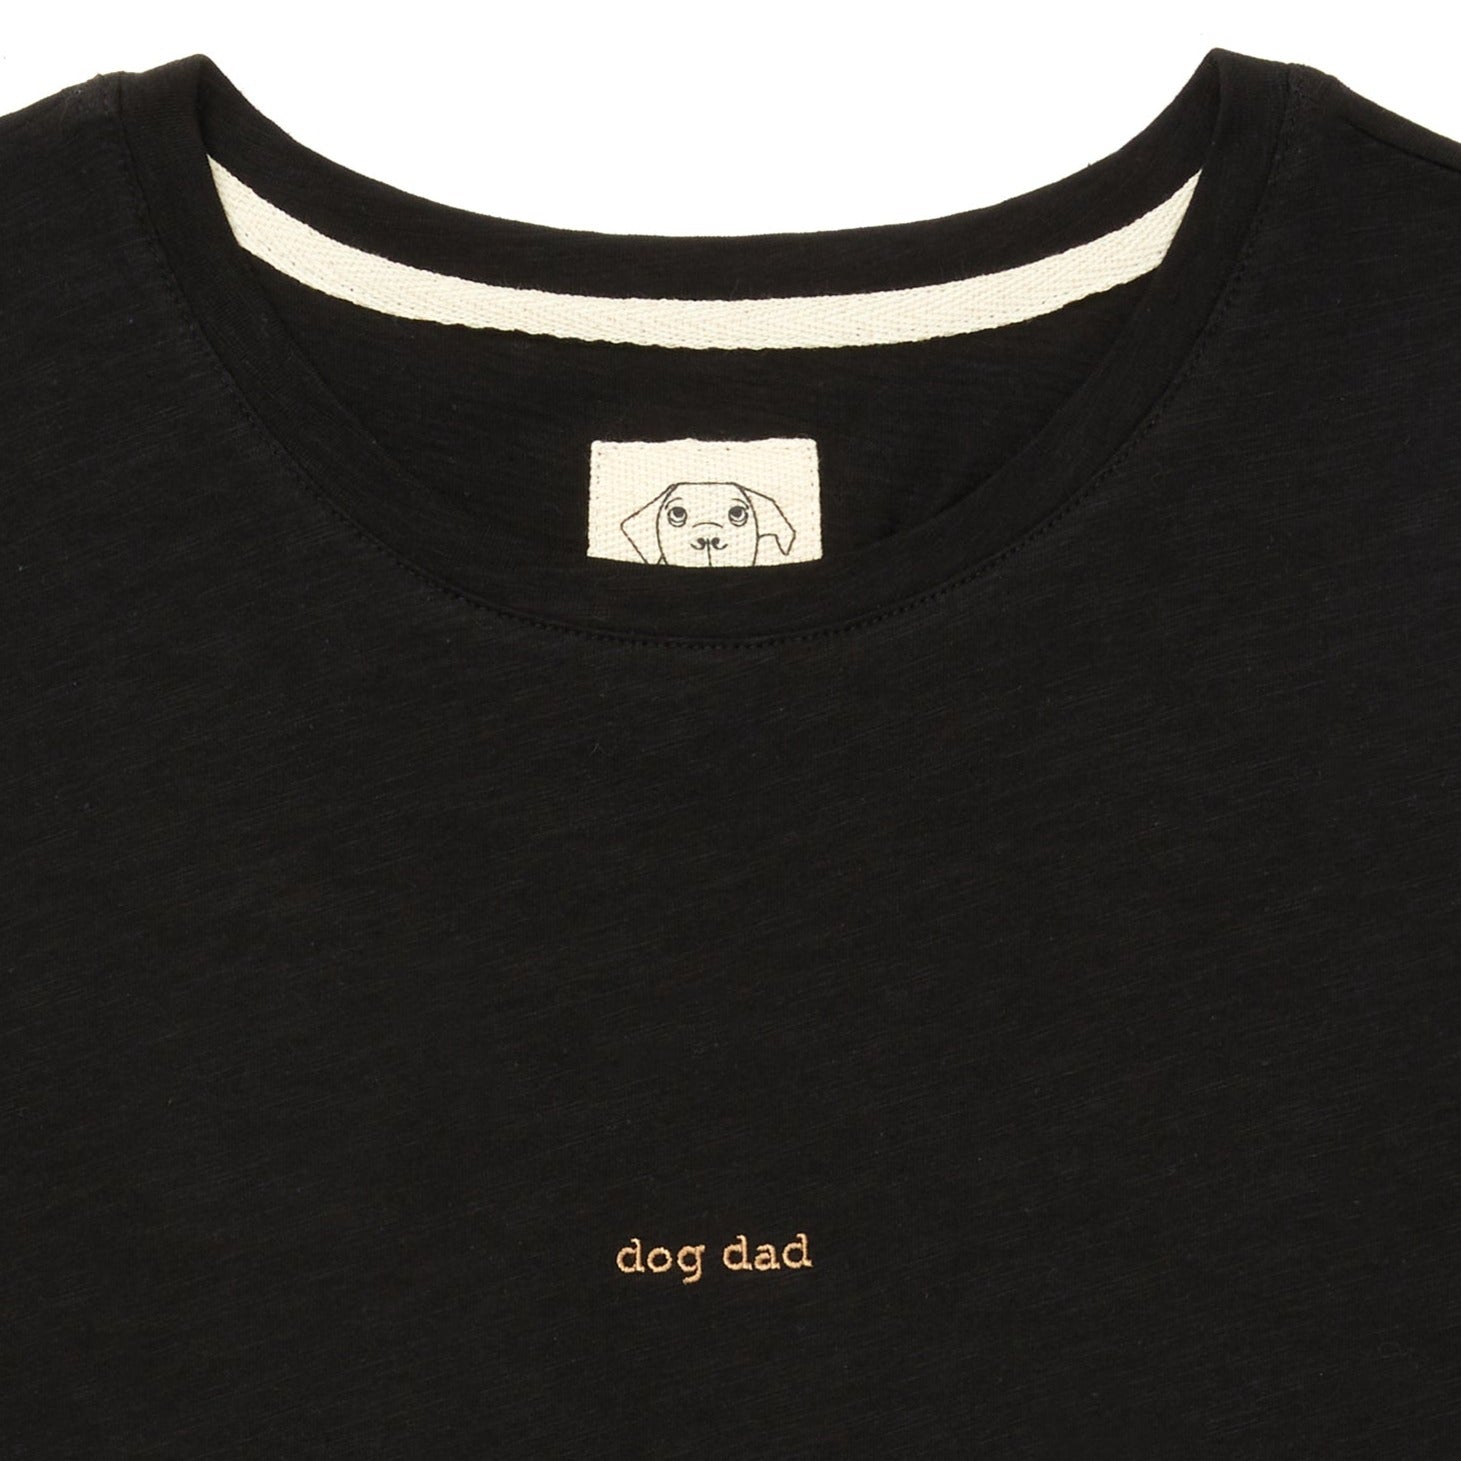 Oversized T-shirt "dog dad" - MONS BONS